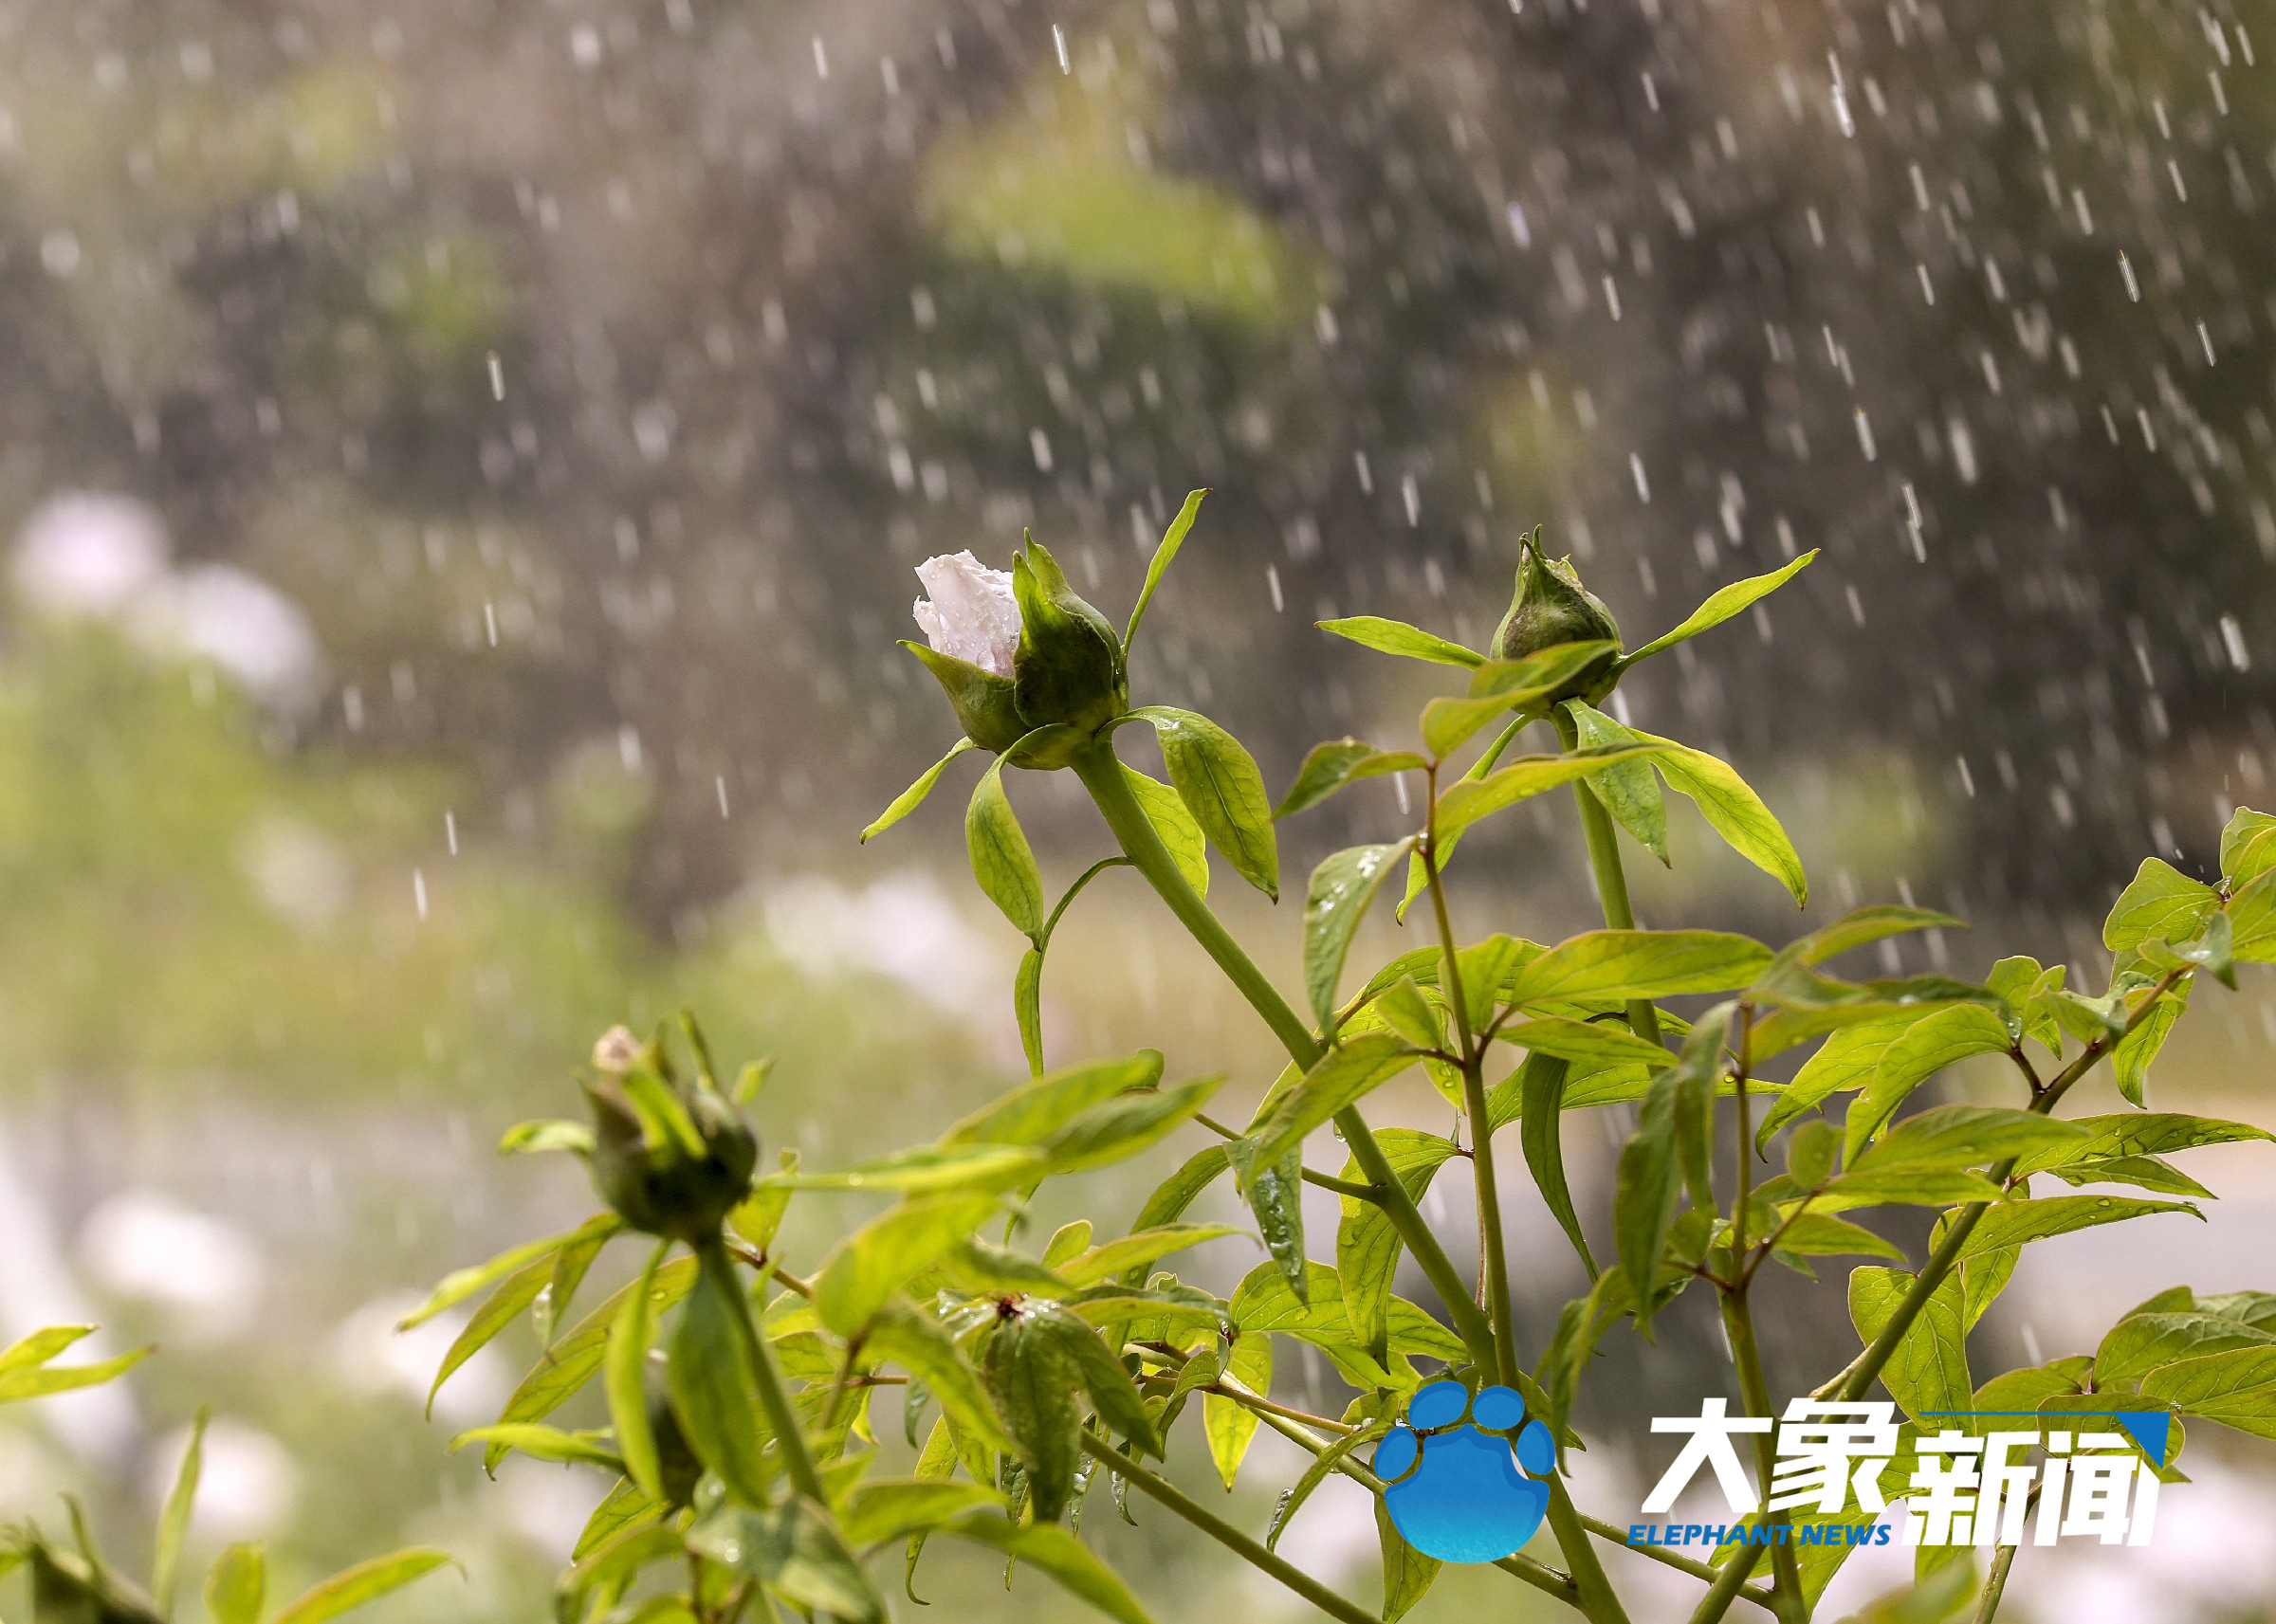 来赏牡丹了！郑州市植物园内牡丹花竞相开放 